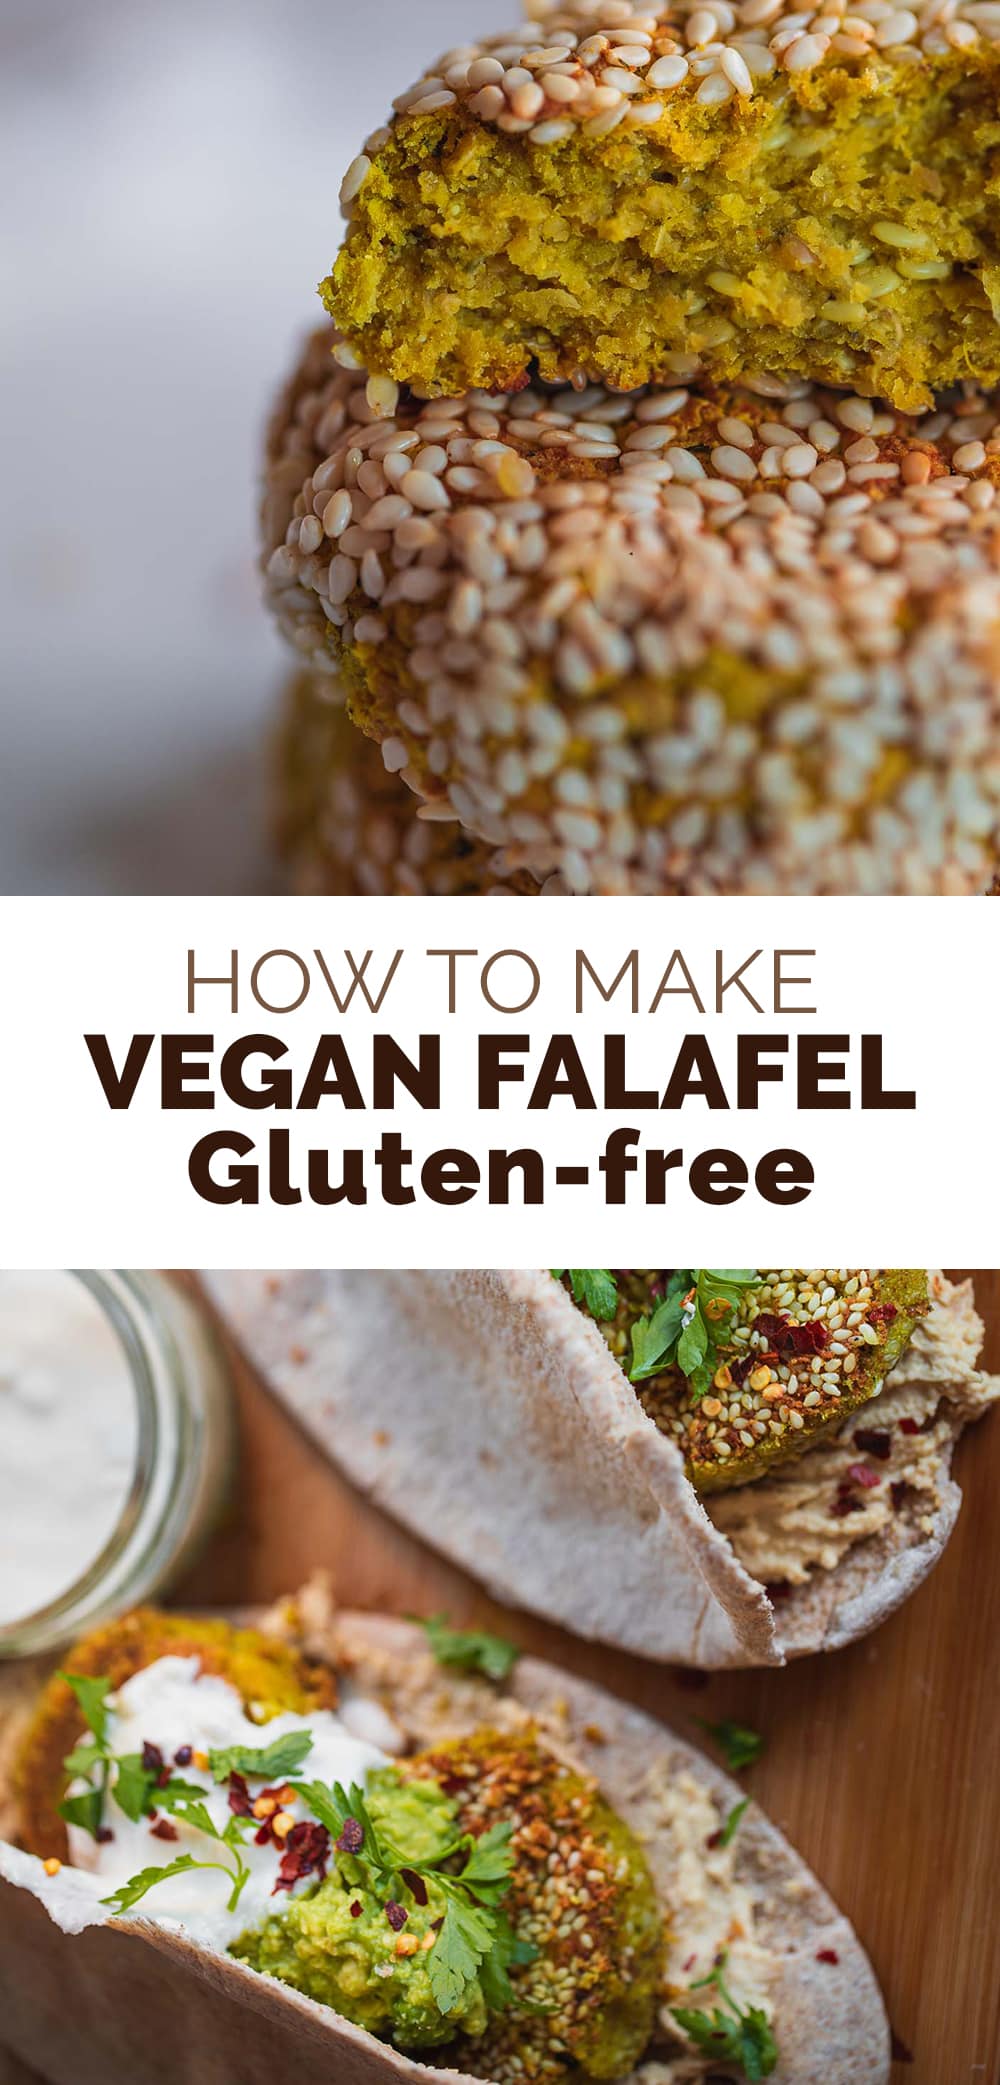 Vegan falafel gluten-free